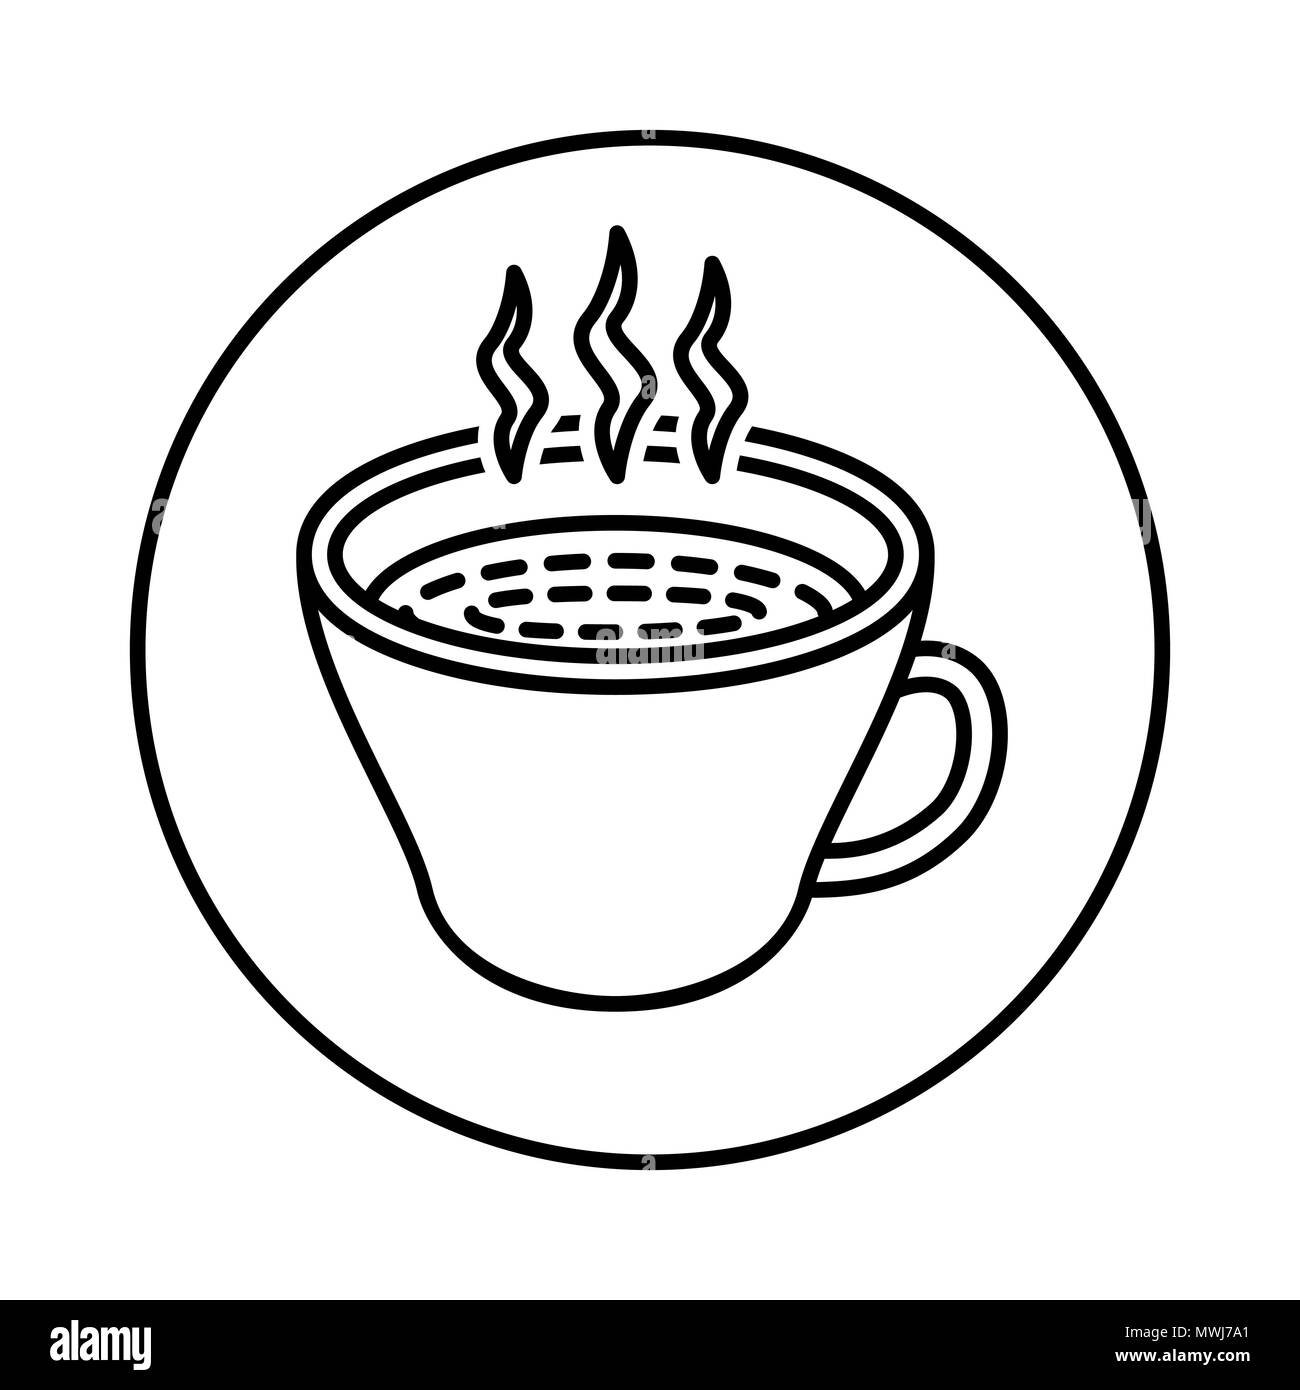 Vecteur de café chaud ou un thé dans l'icône de la ligne du cercle, symbole iconique dans un cercle, sur fond blanc. Vector design iconique. Illustration de Vecteur